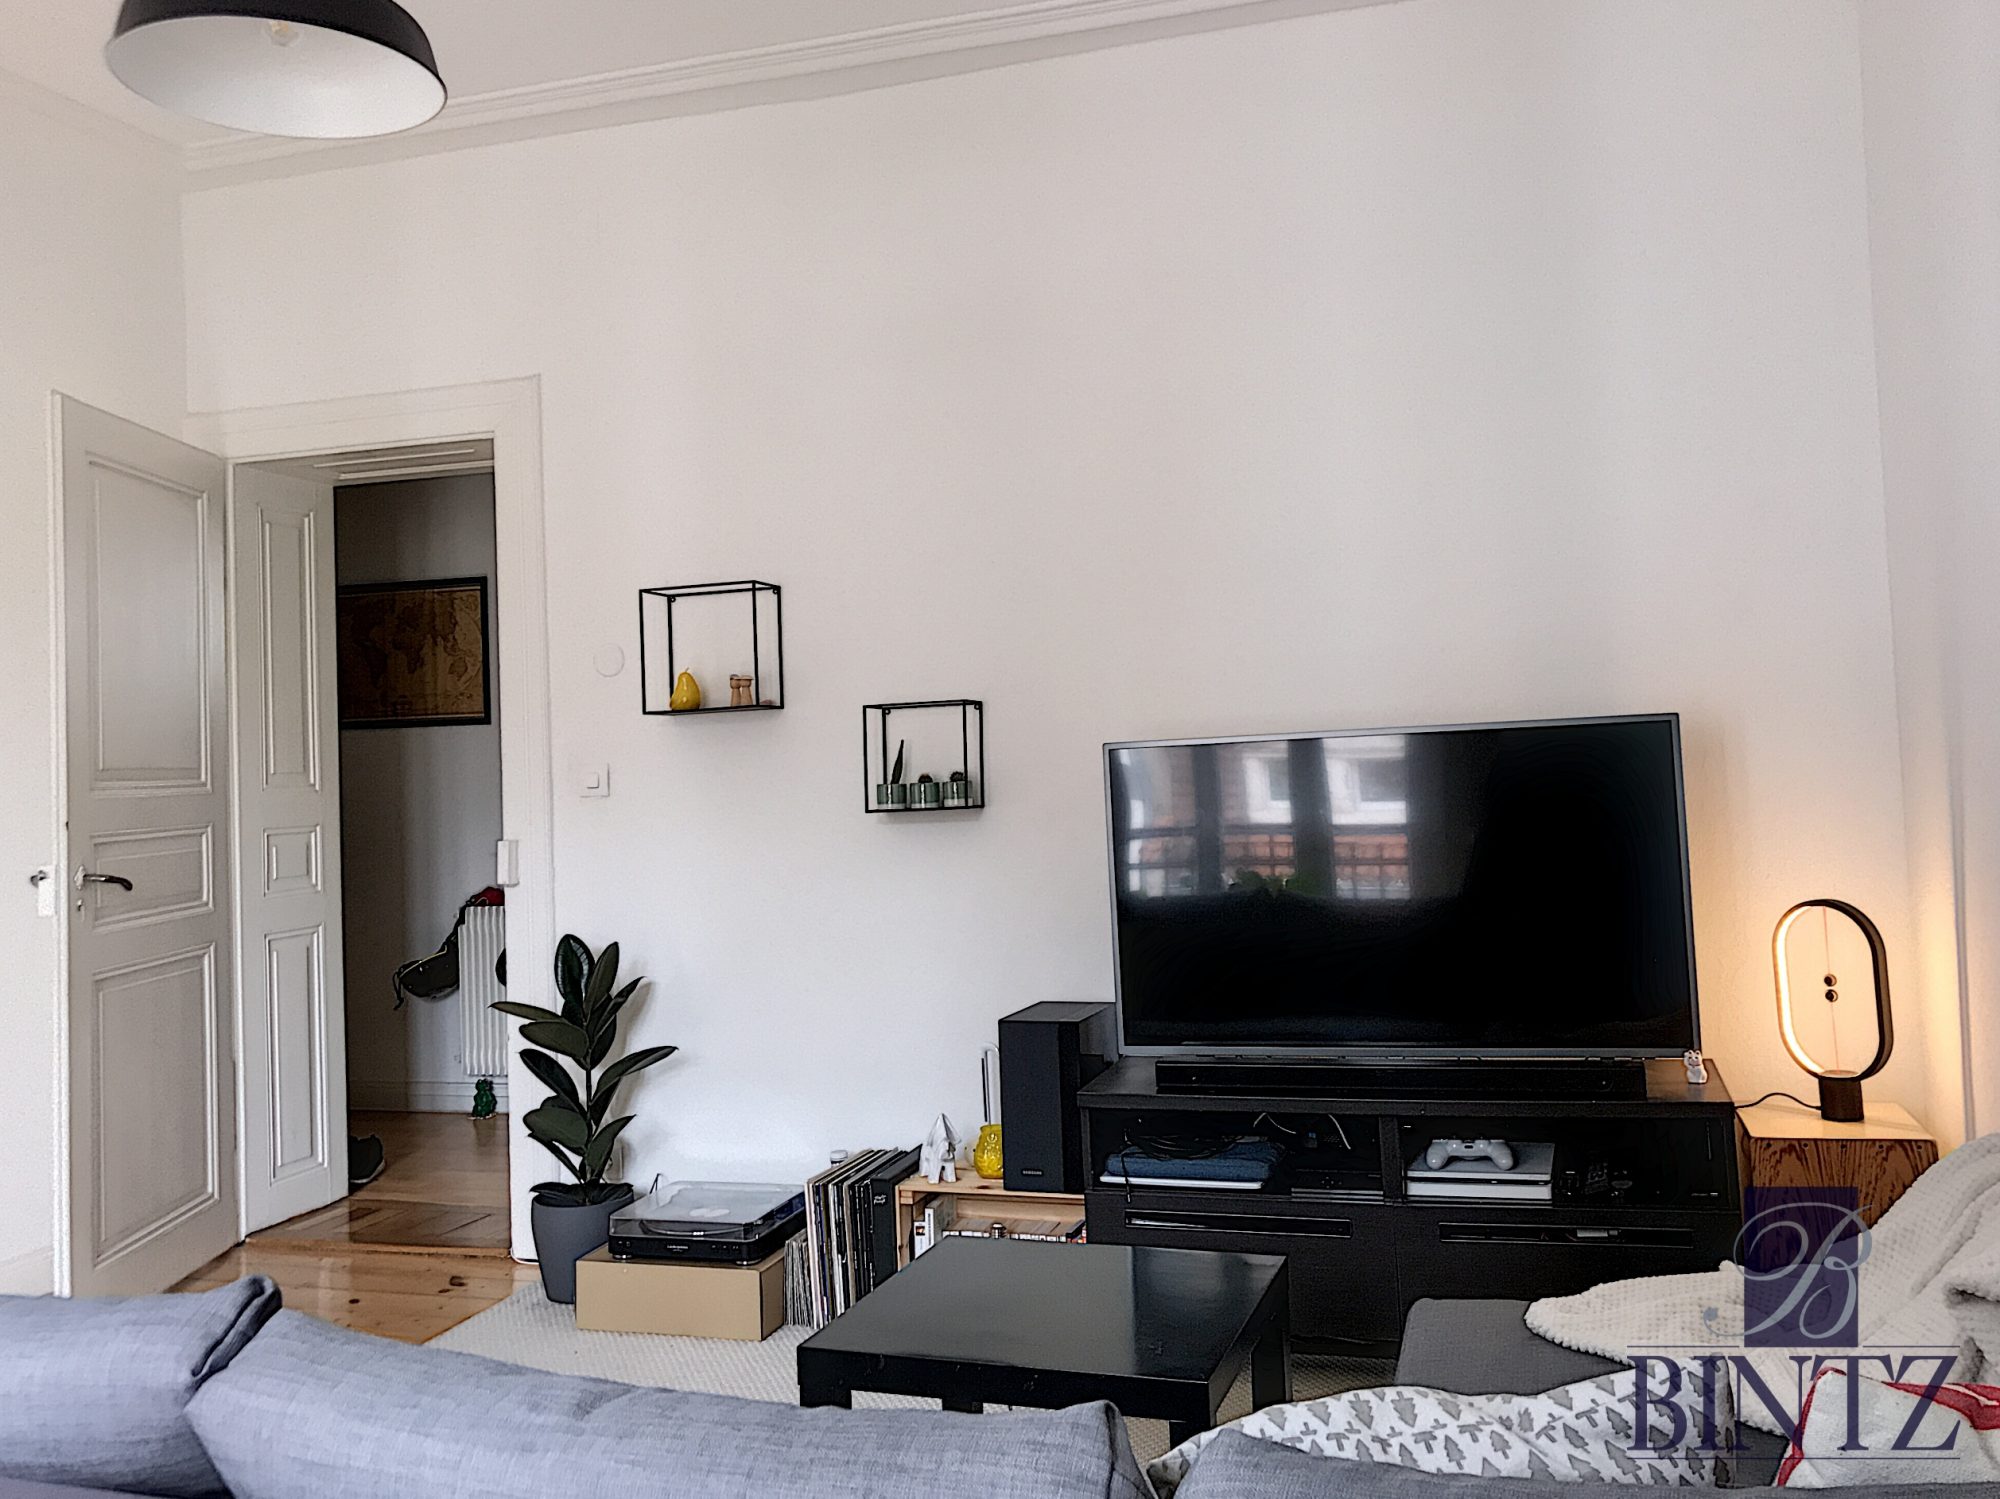 INVESTISSEMENT LOCATIF - achat appartement Strasbourg - Bintz Immobilier - 3